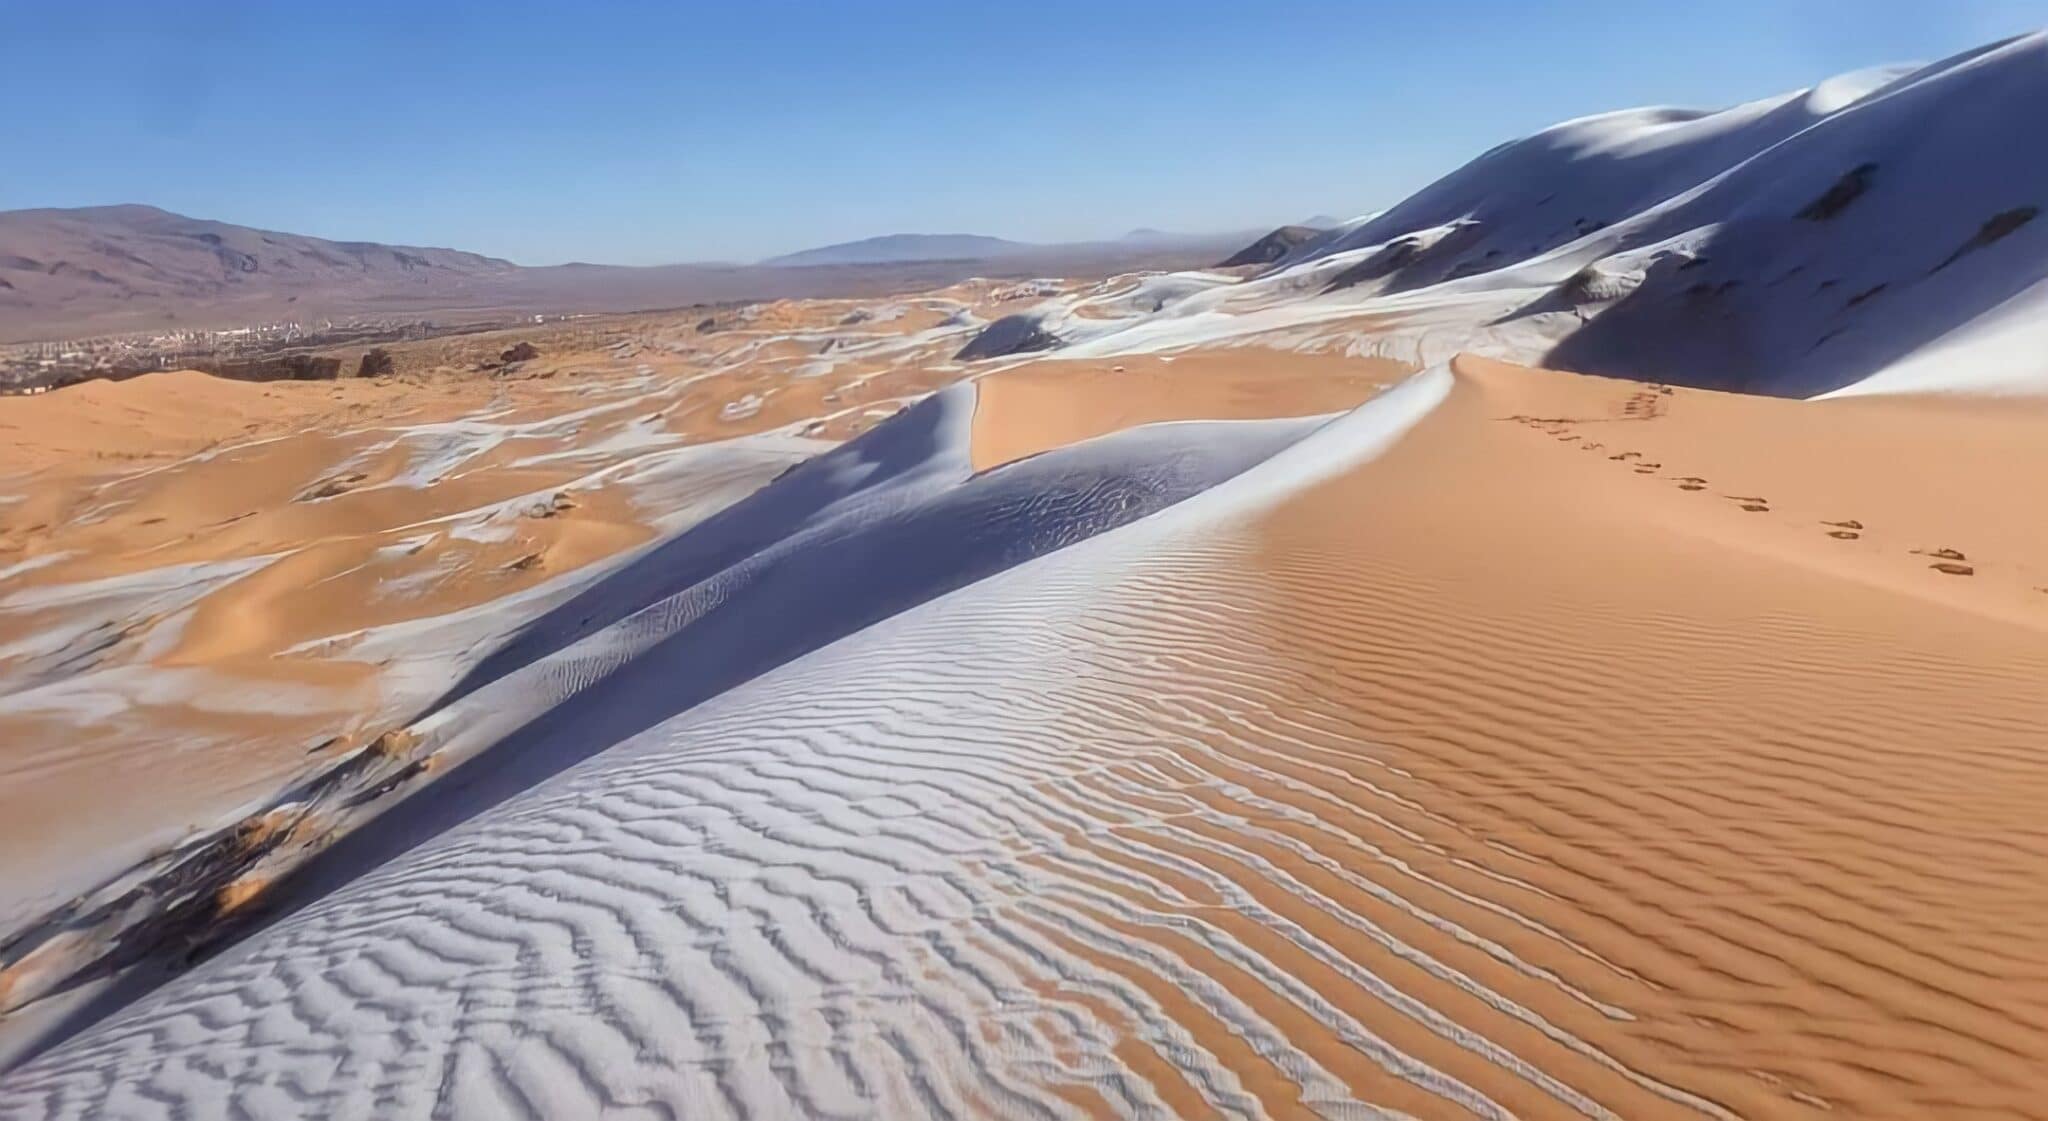 الرمال الذهبية الممزوجة بالجليد عين الصفراء النعامة الجزائر